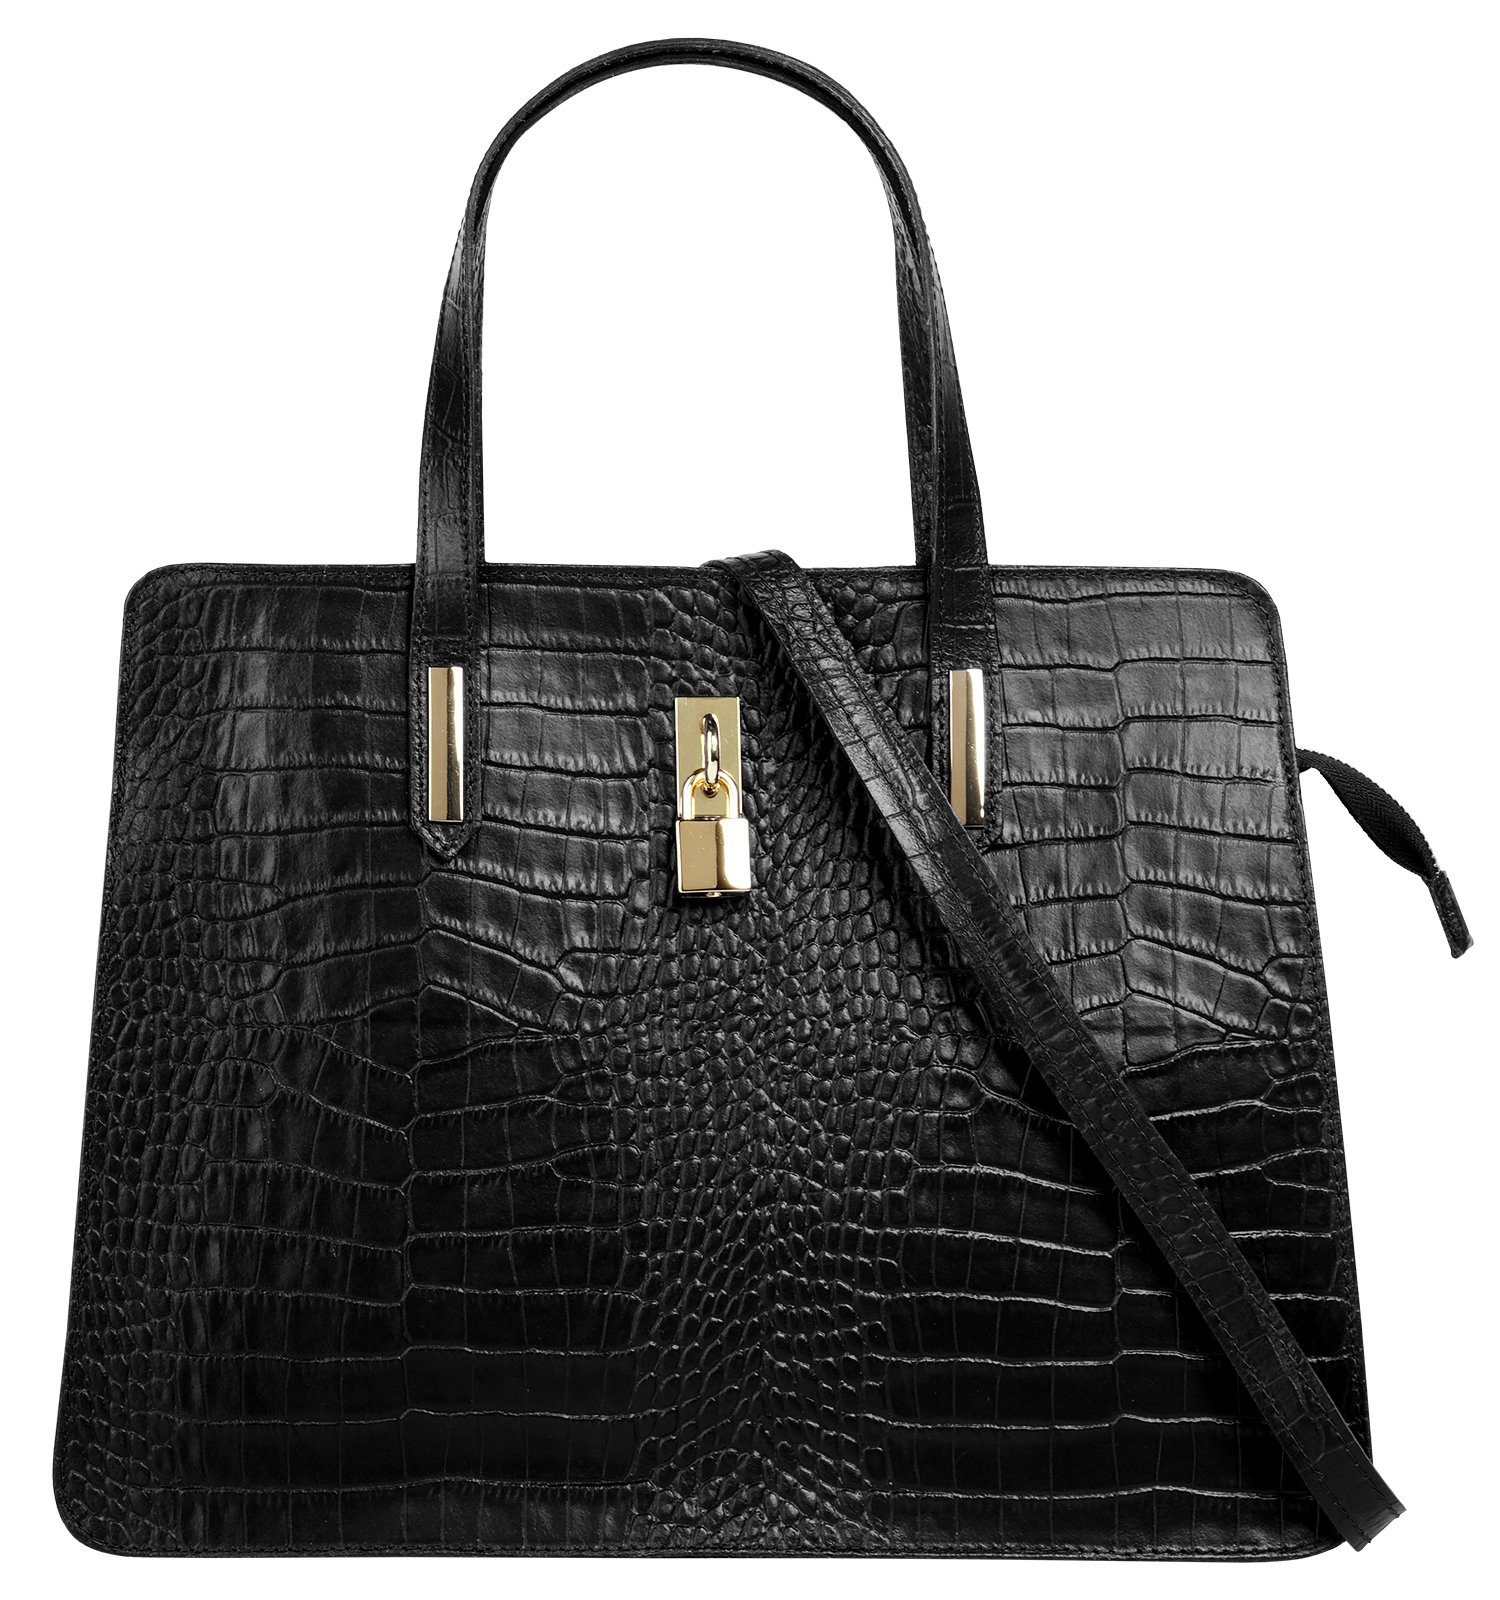 Damen Handtaschen online kaufen | OTTO